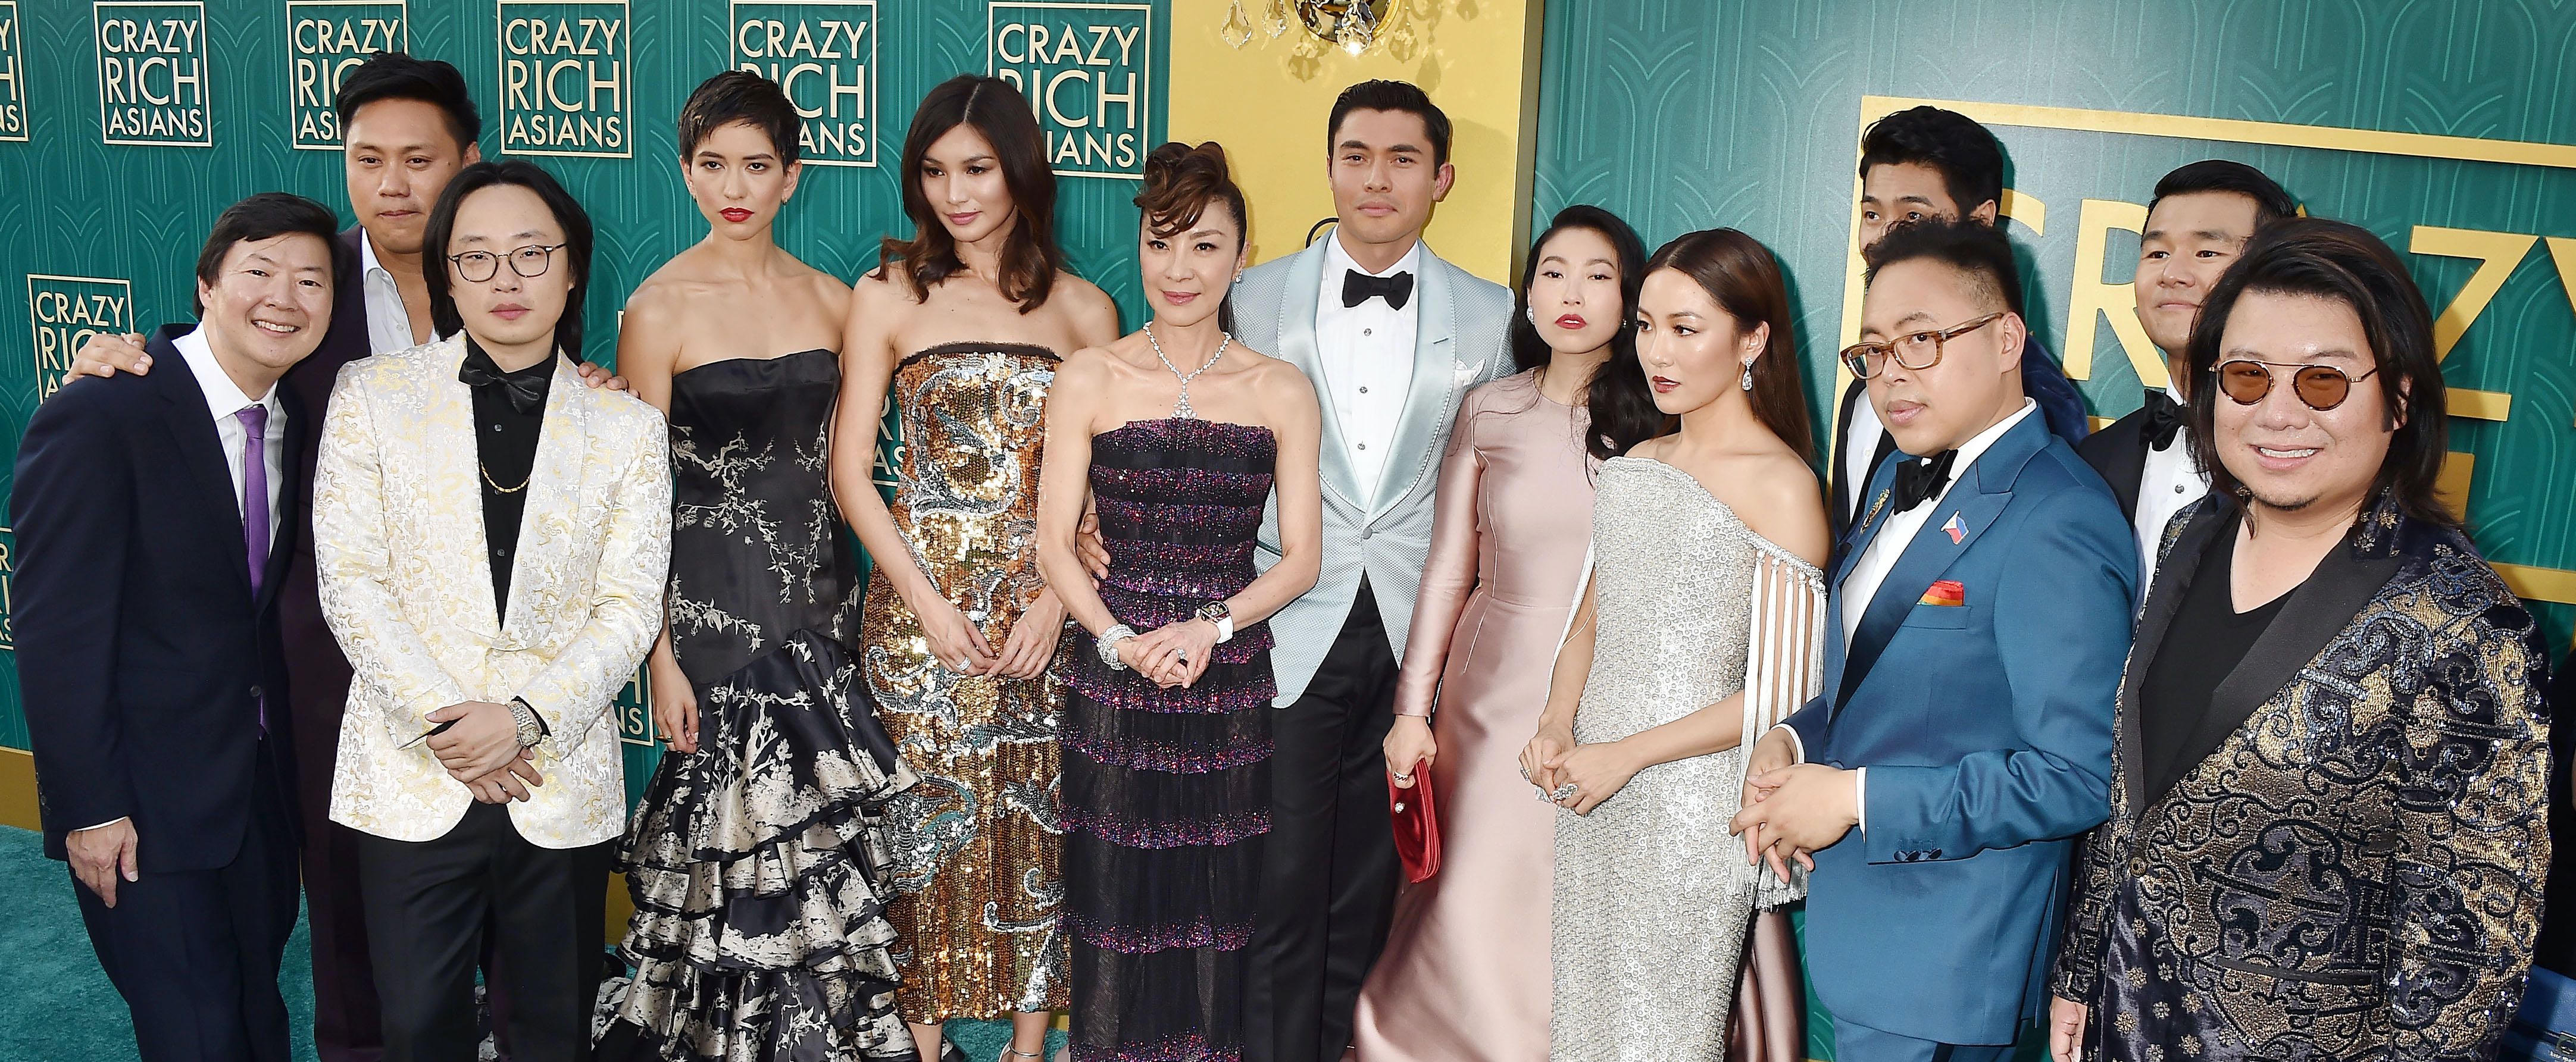 Crazy Rich Asians-fans opgelet: er komt een Broadwaymusical